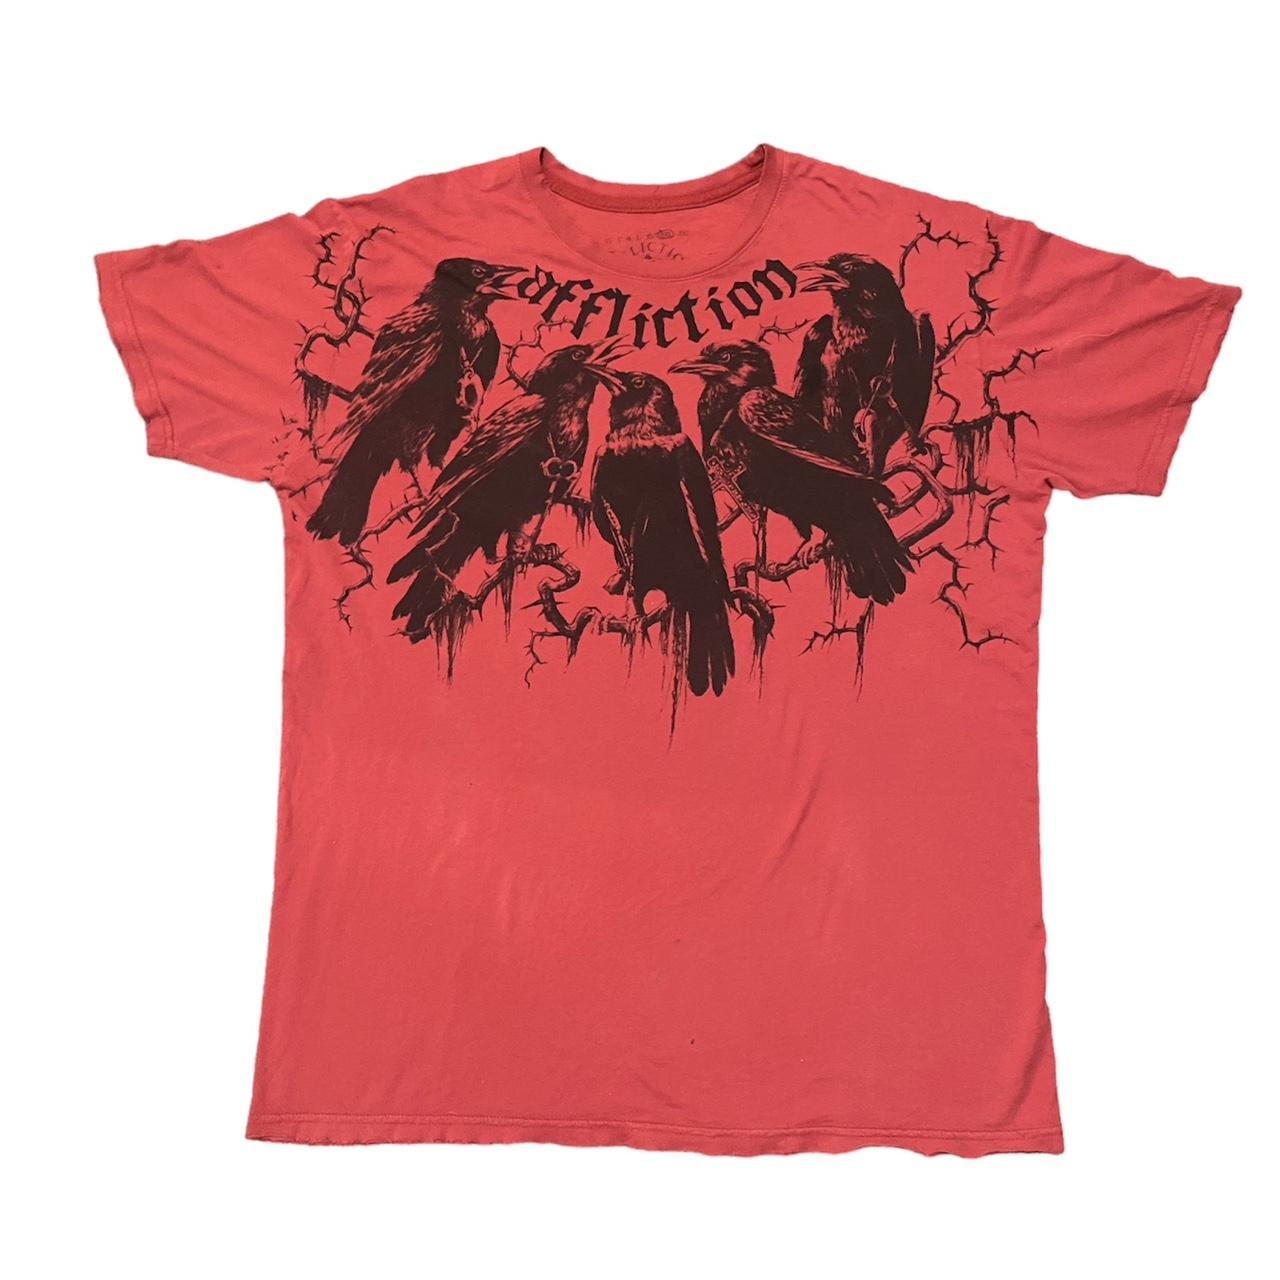 Affliction Men's Red and Black T-shirt | Depop